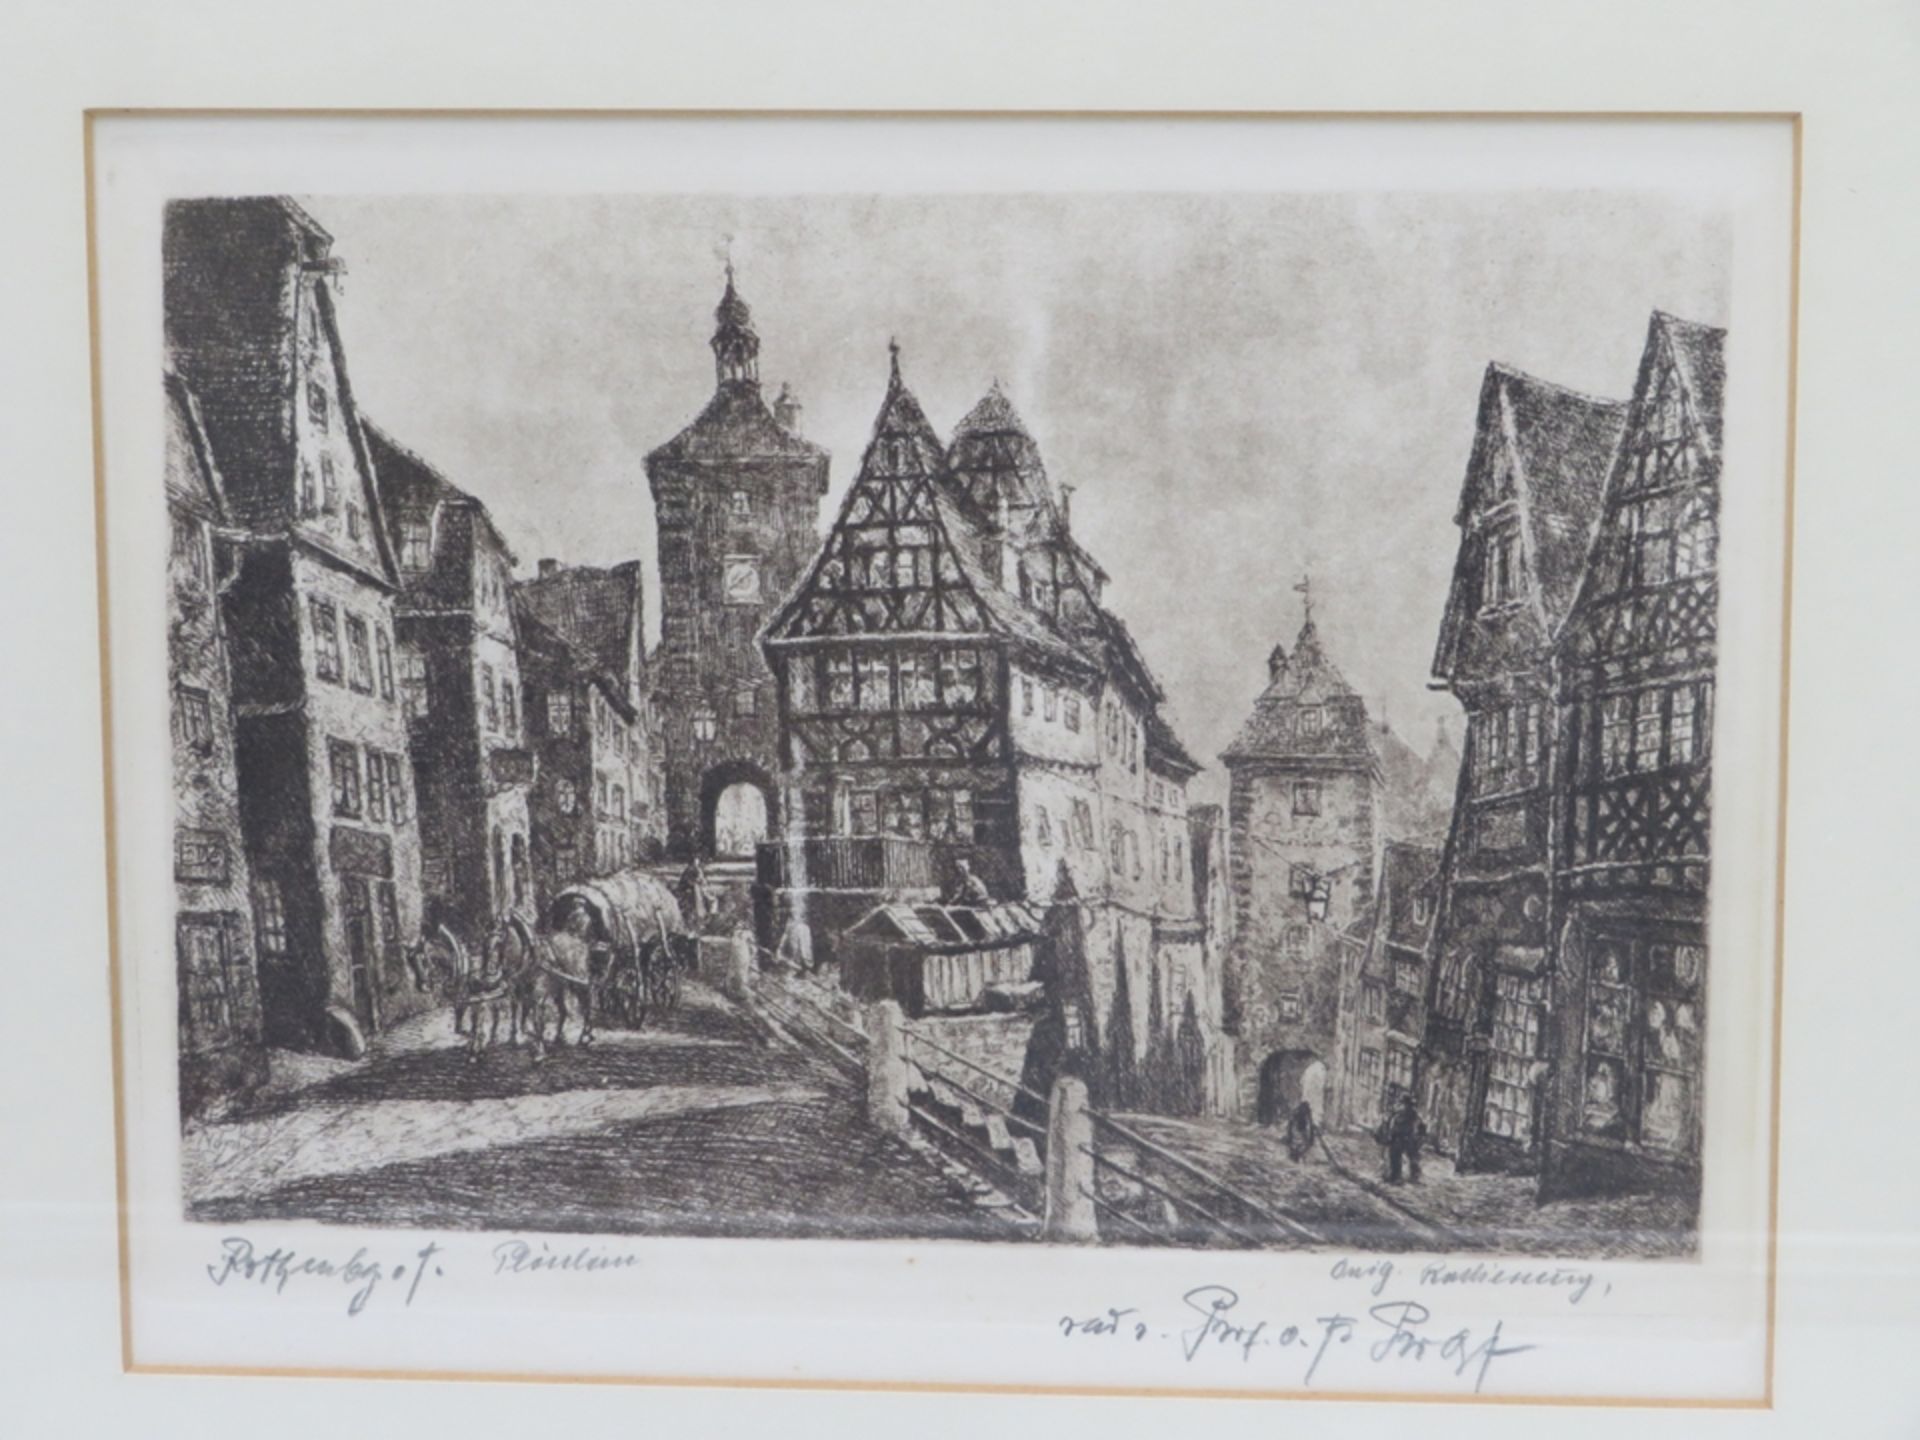 Prolst, O.F., "Rothenburg ob der Tauber", 2 Radierungen, 15 x 22 cm, R. [31 x 36 cm] - Image 2 of 2